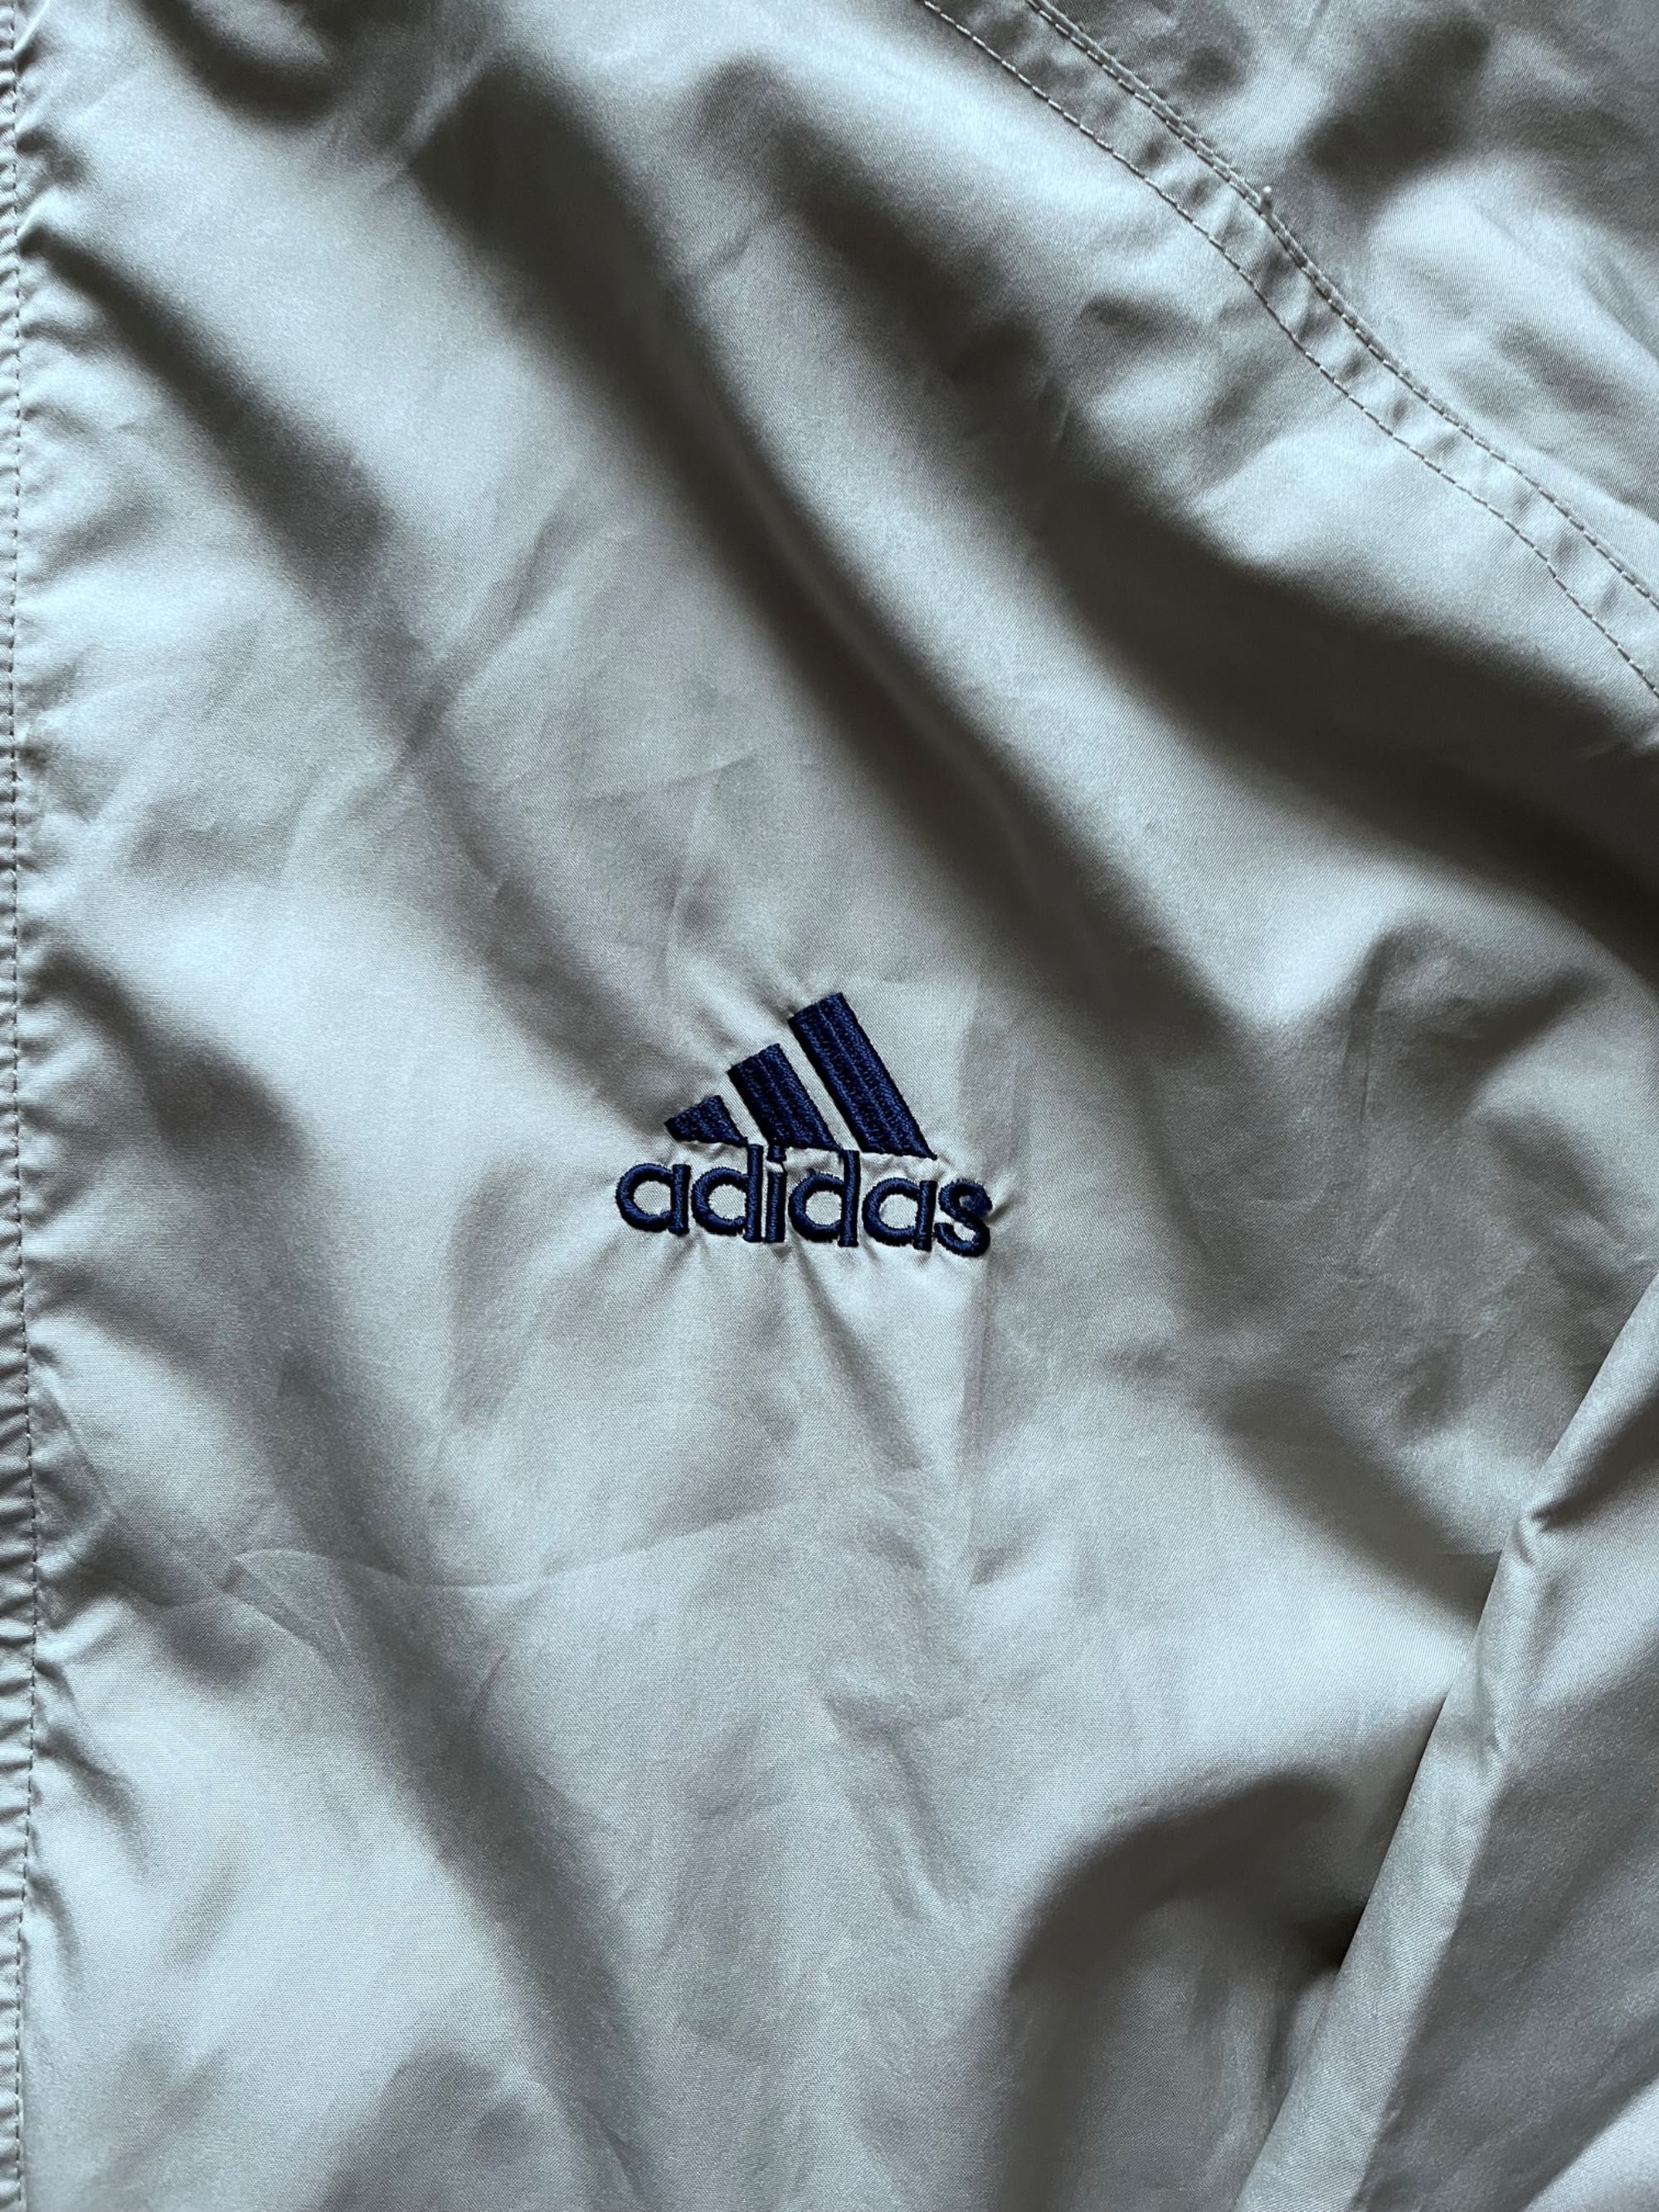 Kurtka Adidas vintage z lat 90 bezowa rozmiar L stan dobry